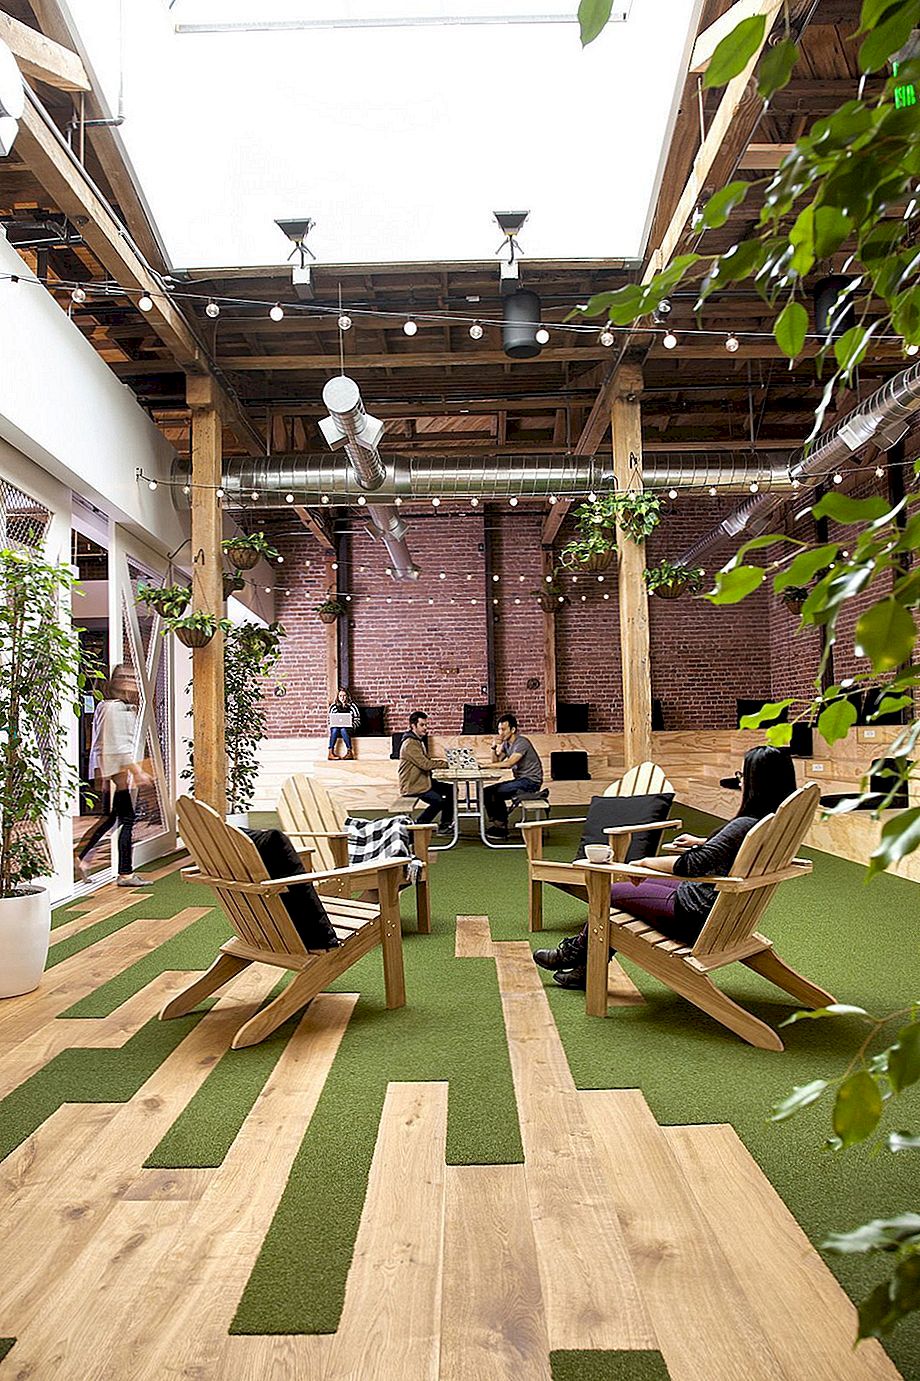 GitHub HQ má bary a kavárny místo kanceláří